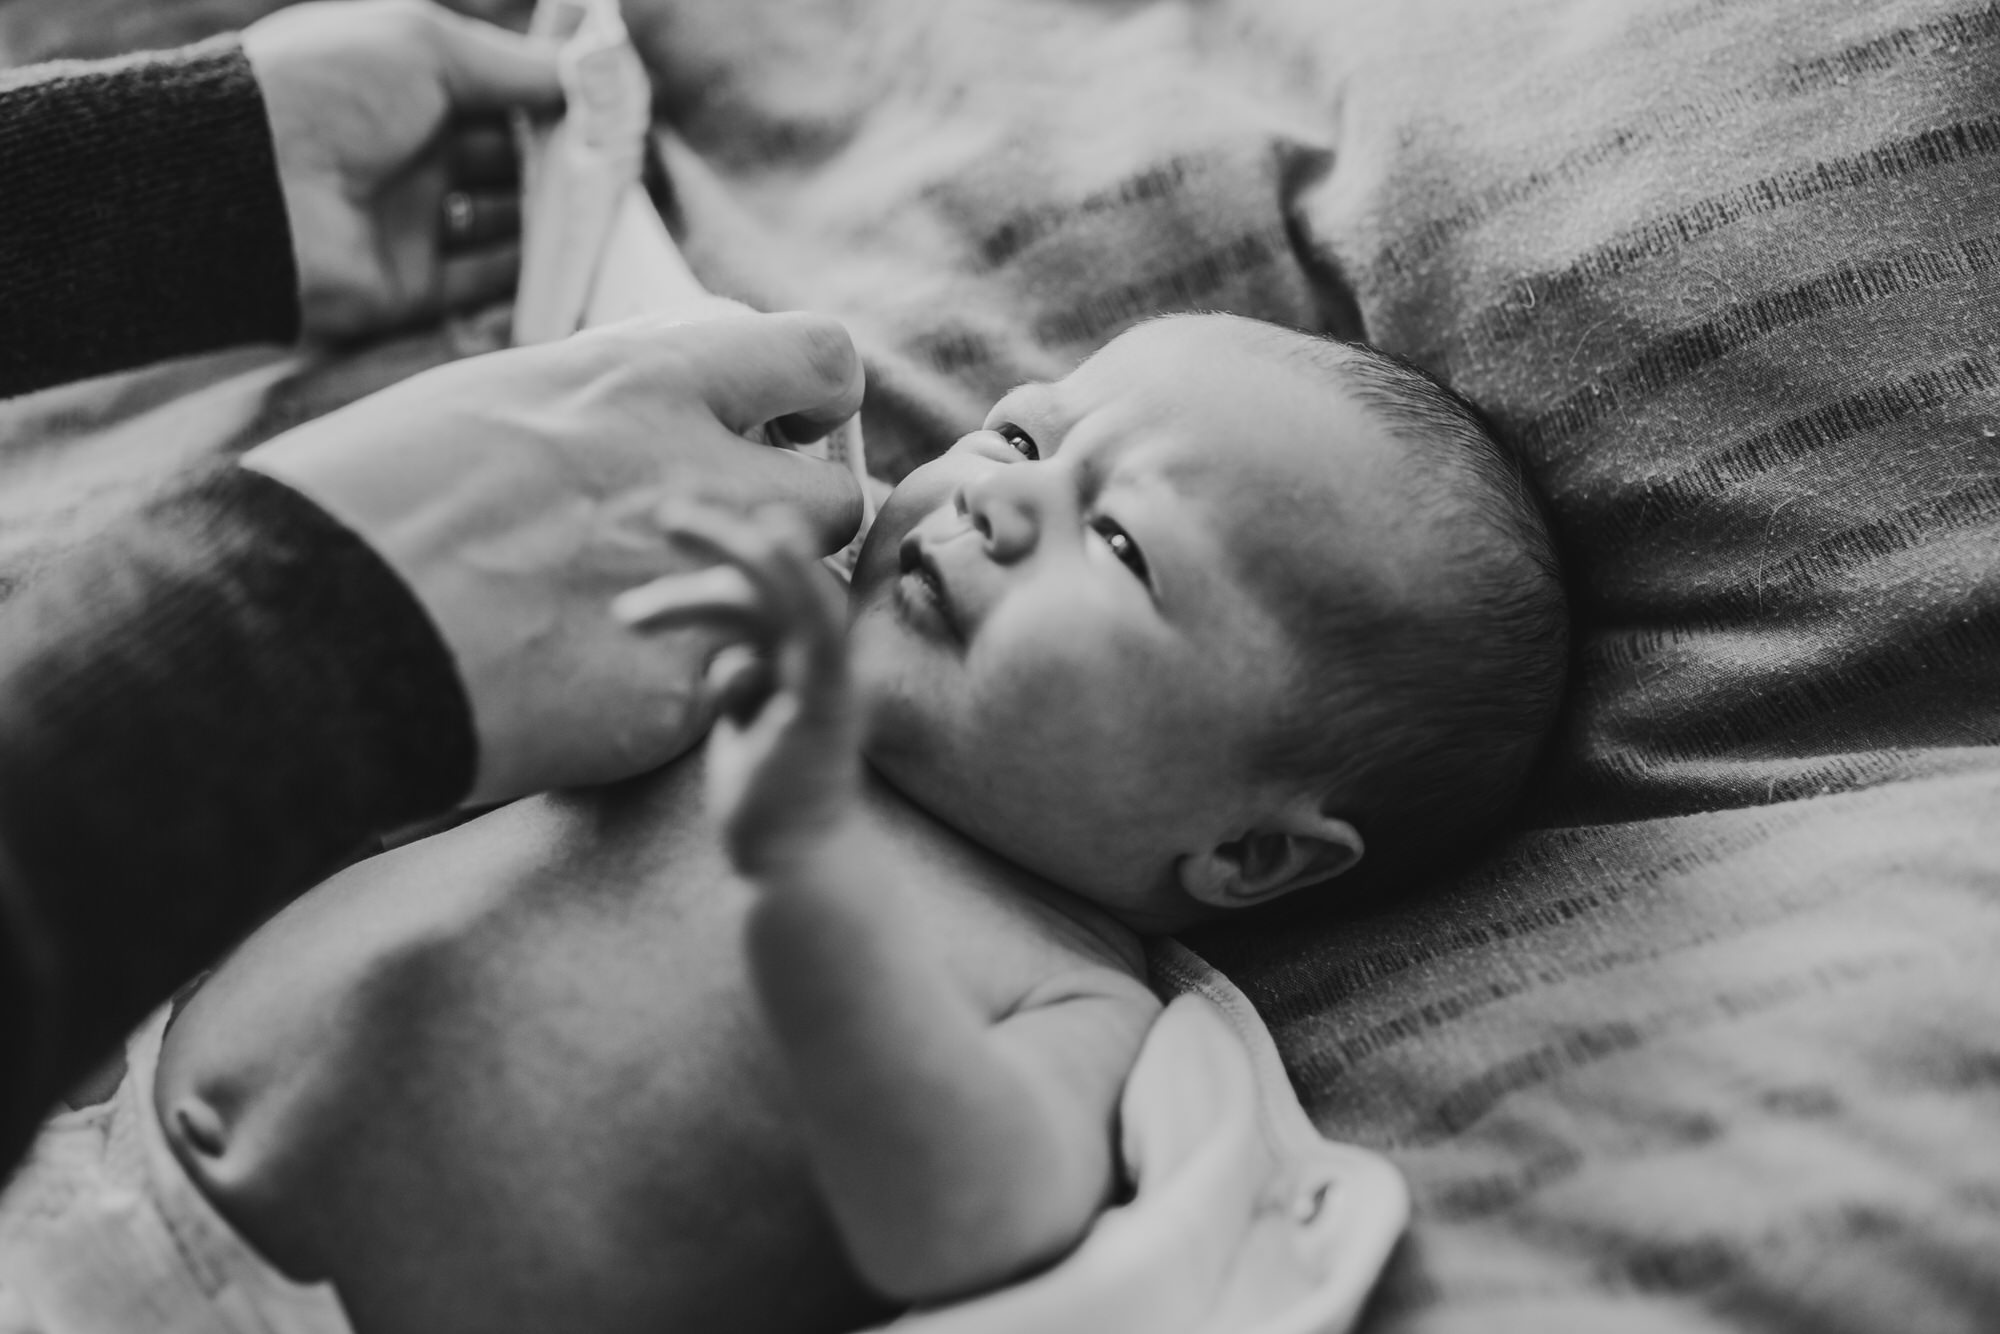 Tillsonburg Newborn Photographer - black and white newborn photography